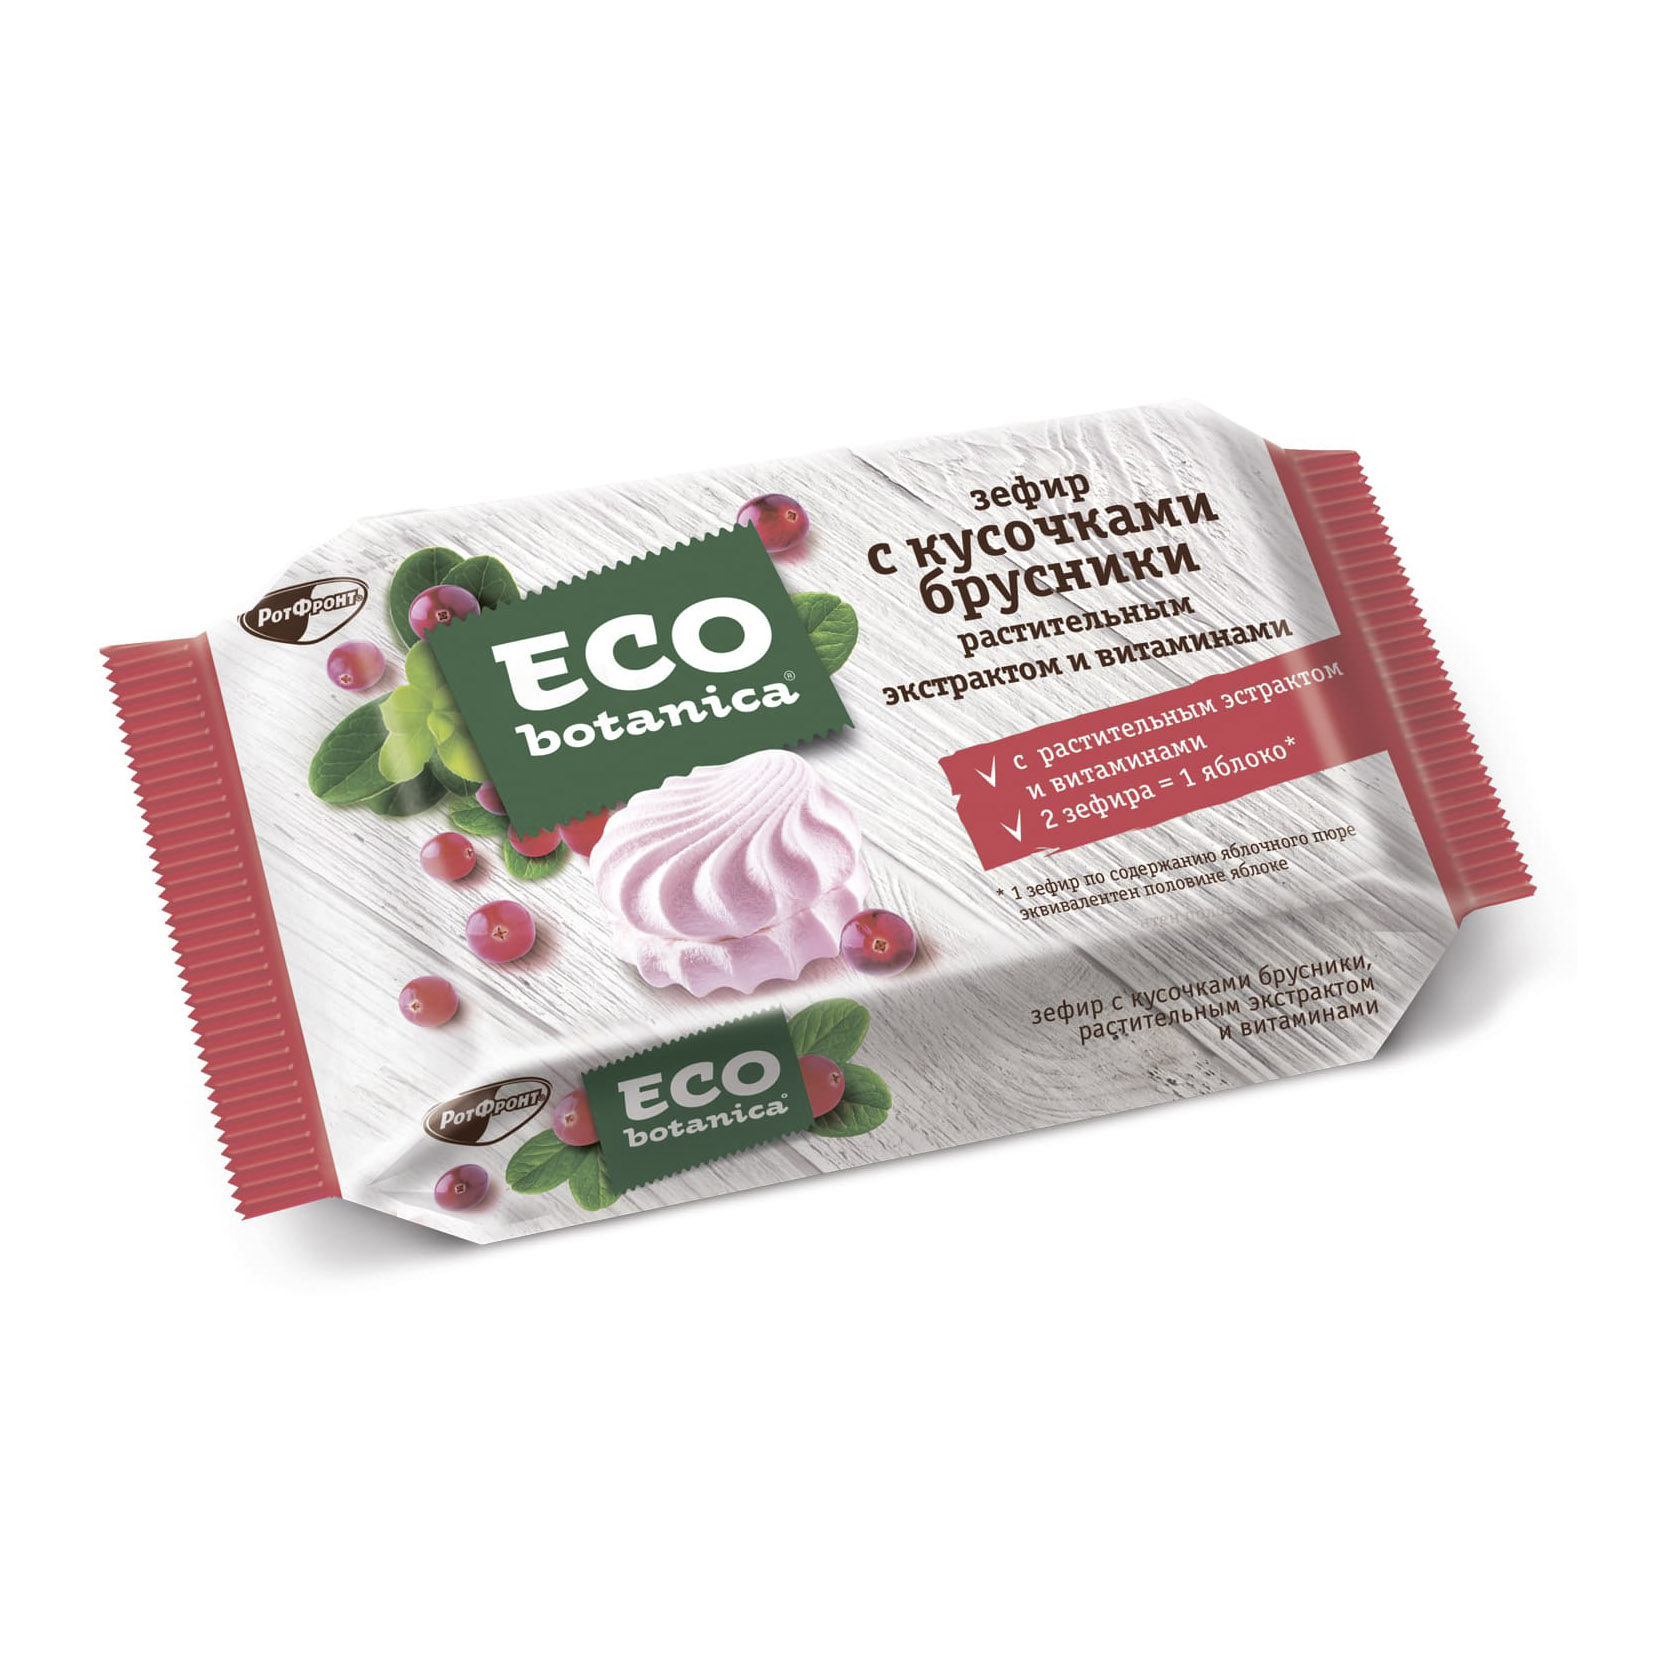 Зефир Eco Botanica с кусочками брусники, растительным экстрактом и витаминами 250 г